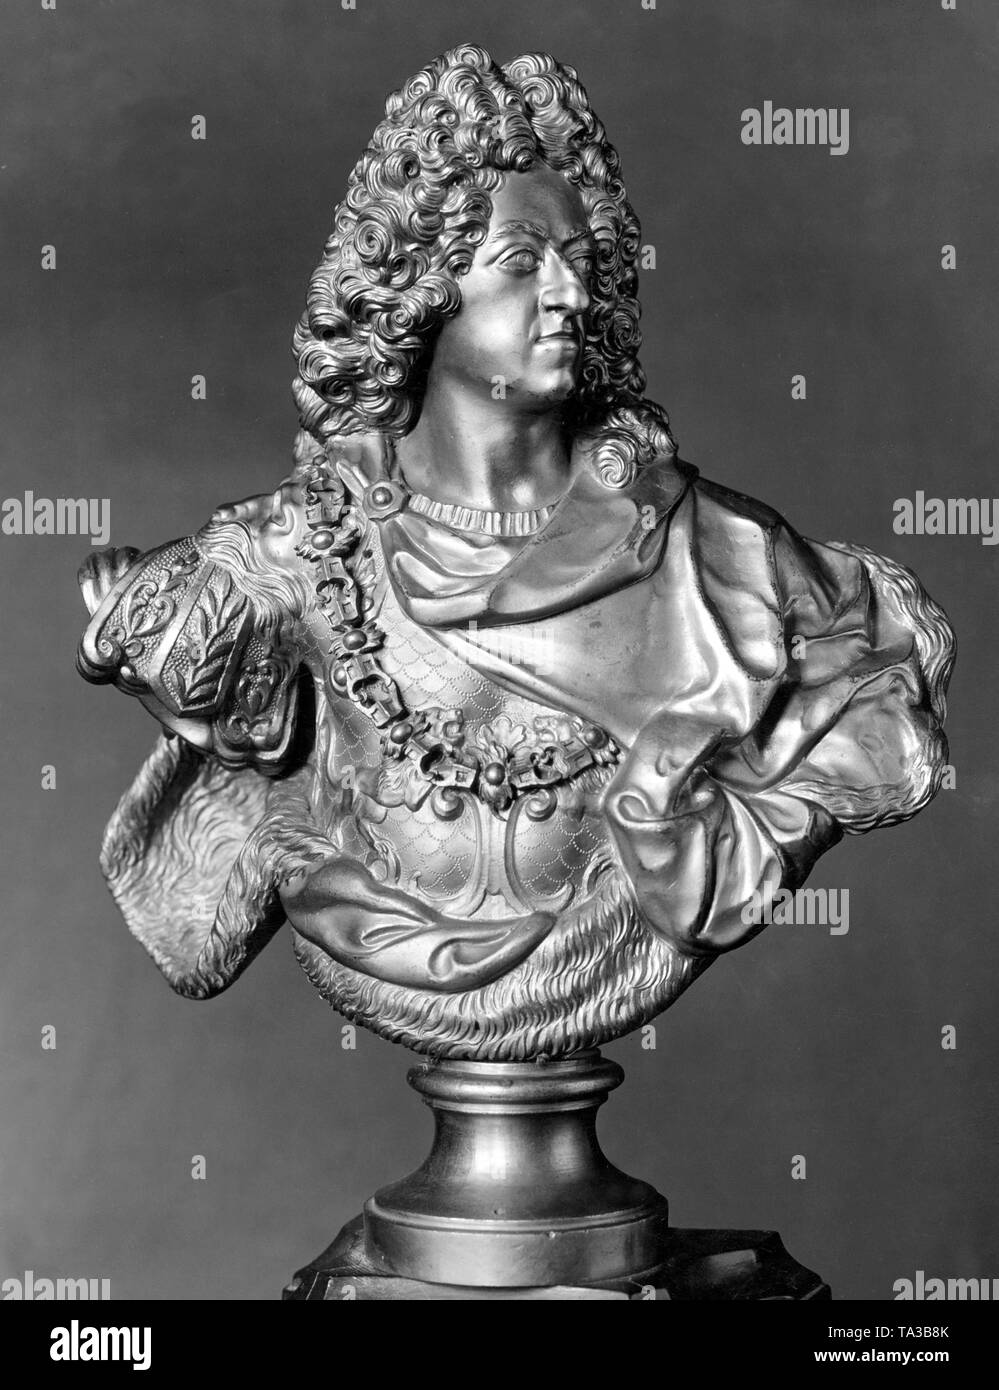 Esta fotografía muestra un busto de Elector Emanuel Maximiliano II de Baviera, gobernador de los Países Bajos españoles, consorte de Theresa Kunigunda. Imagen sin fechar, presumiblemente creado alrededor de 1700. Foto de stock